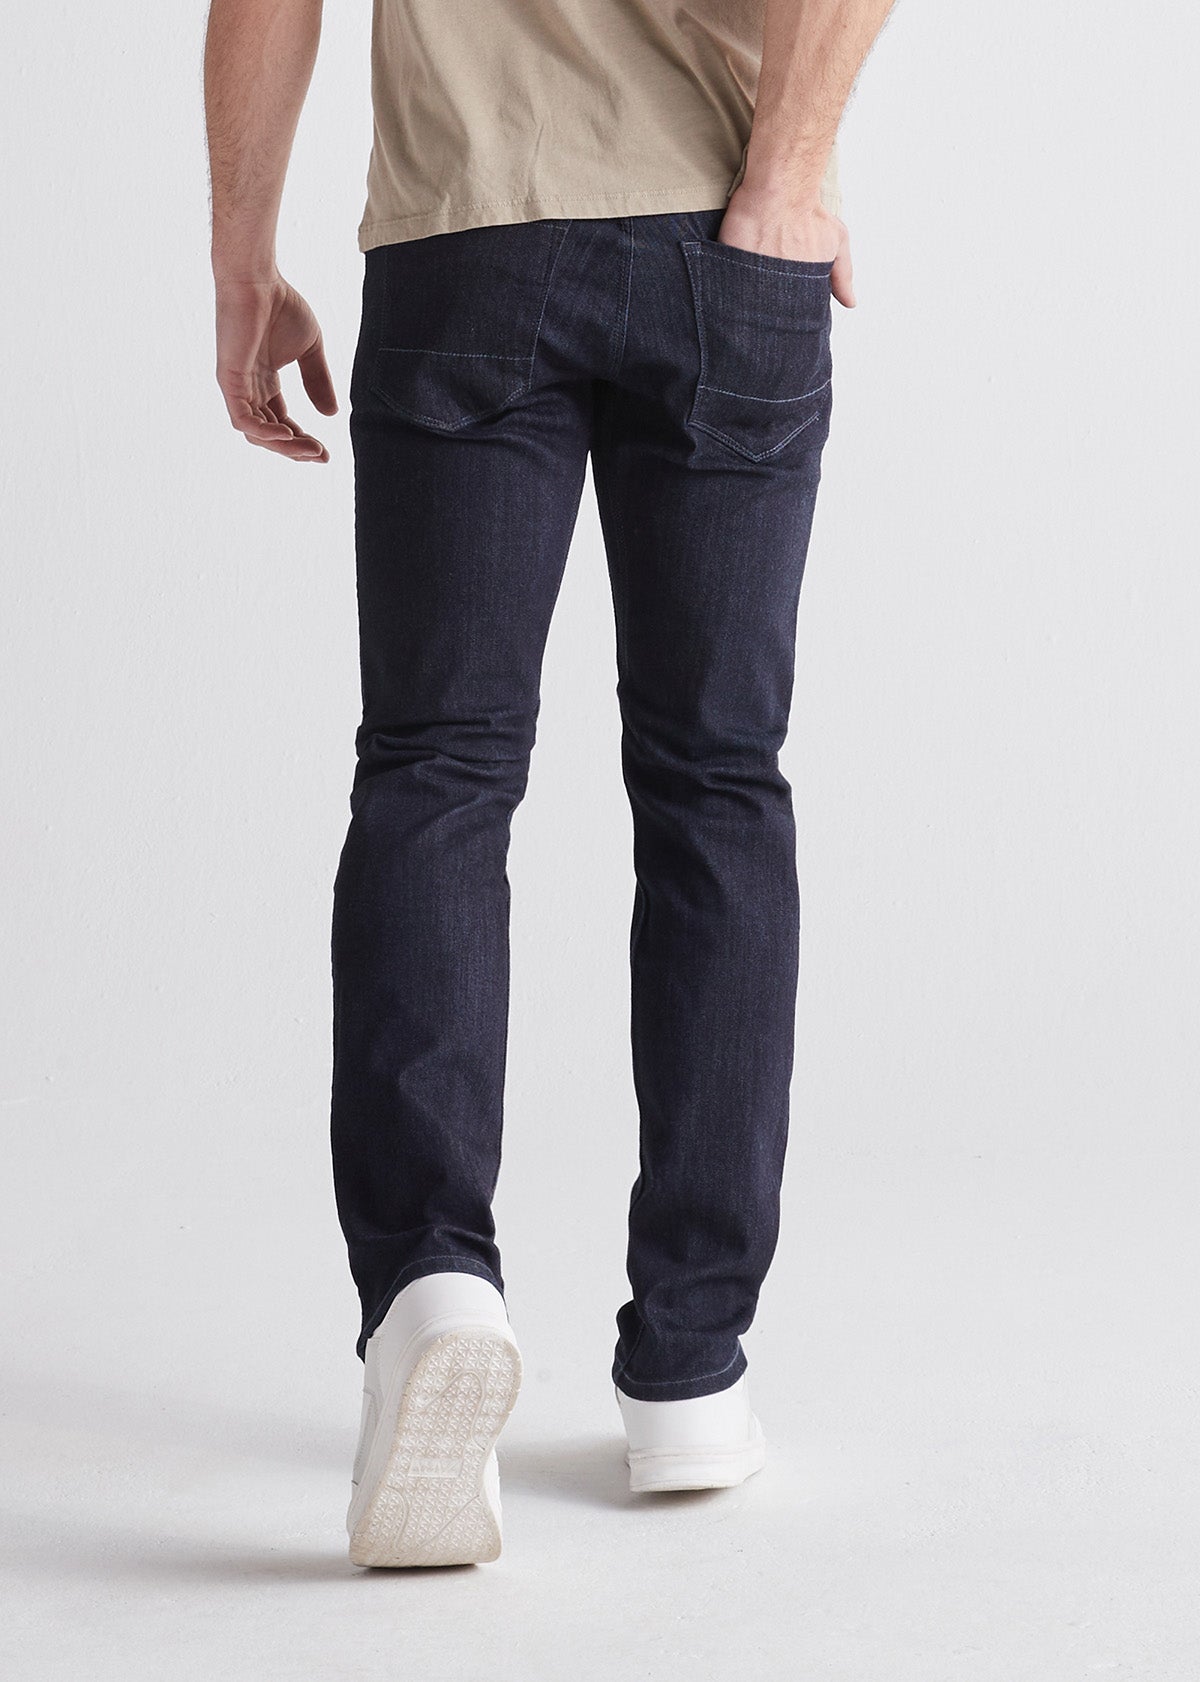 Denim Dan Men's Leggings, Blue Jeans Print